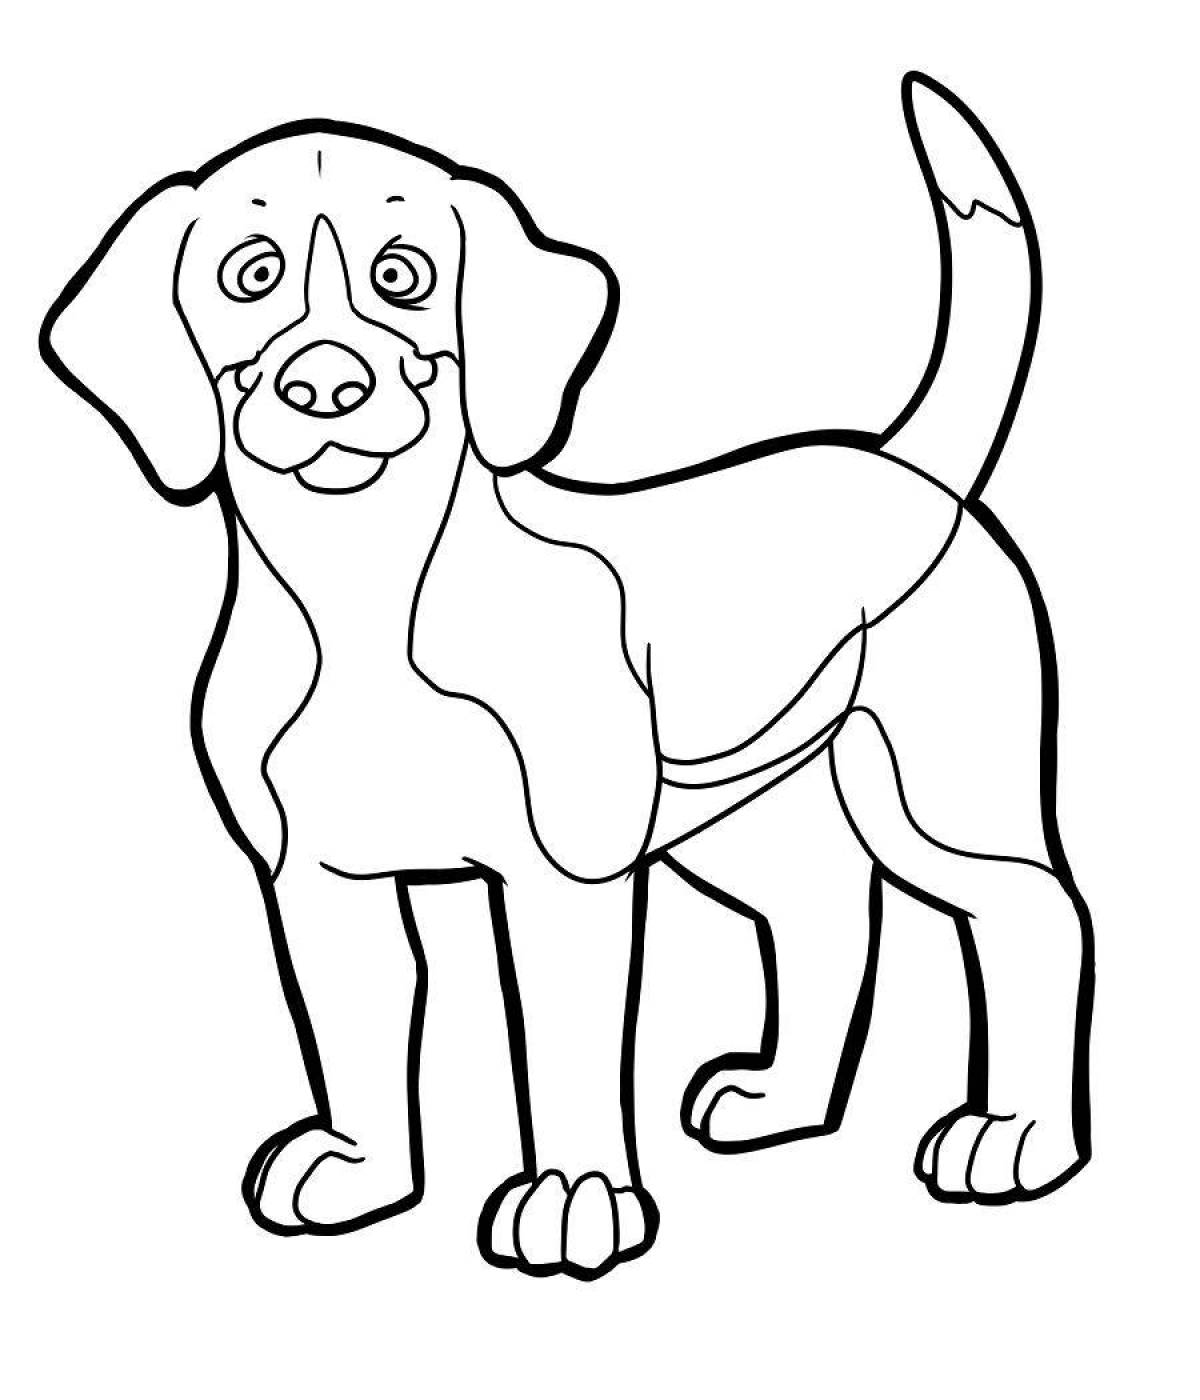 Сложная раскраска рисунок собаки